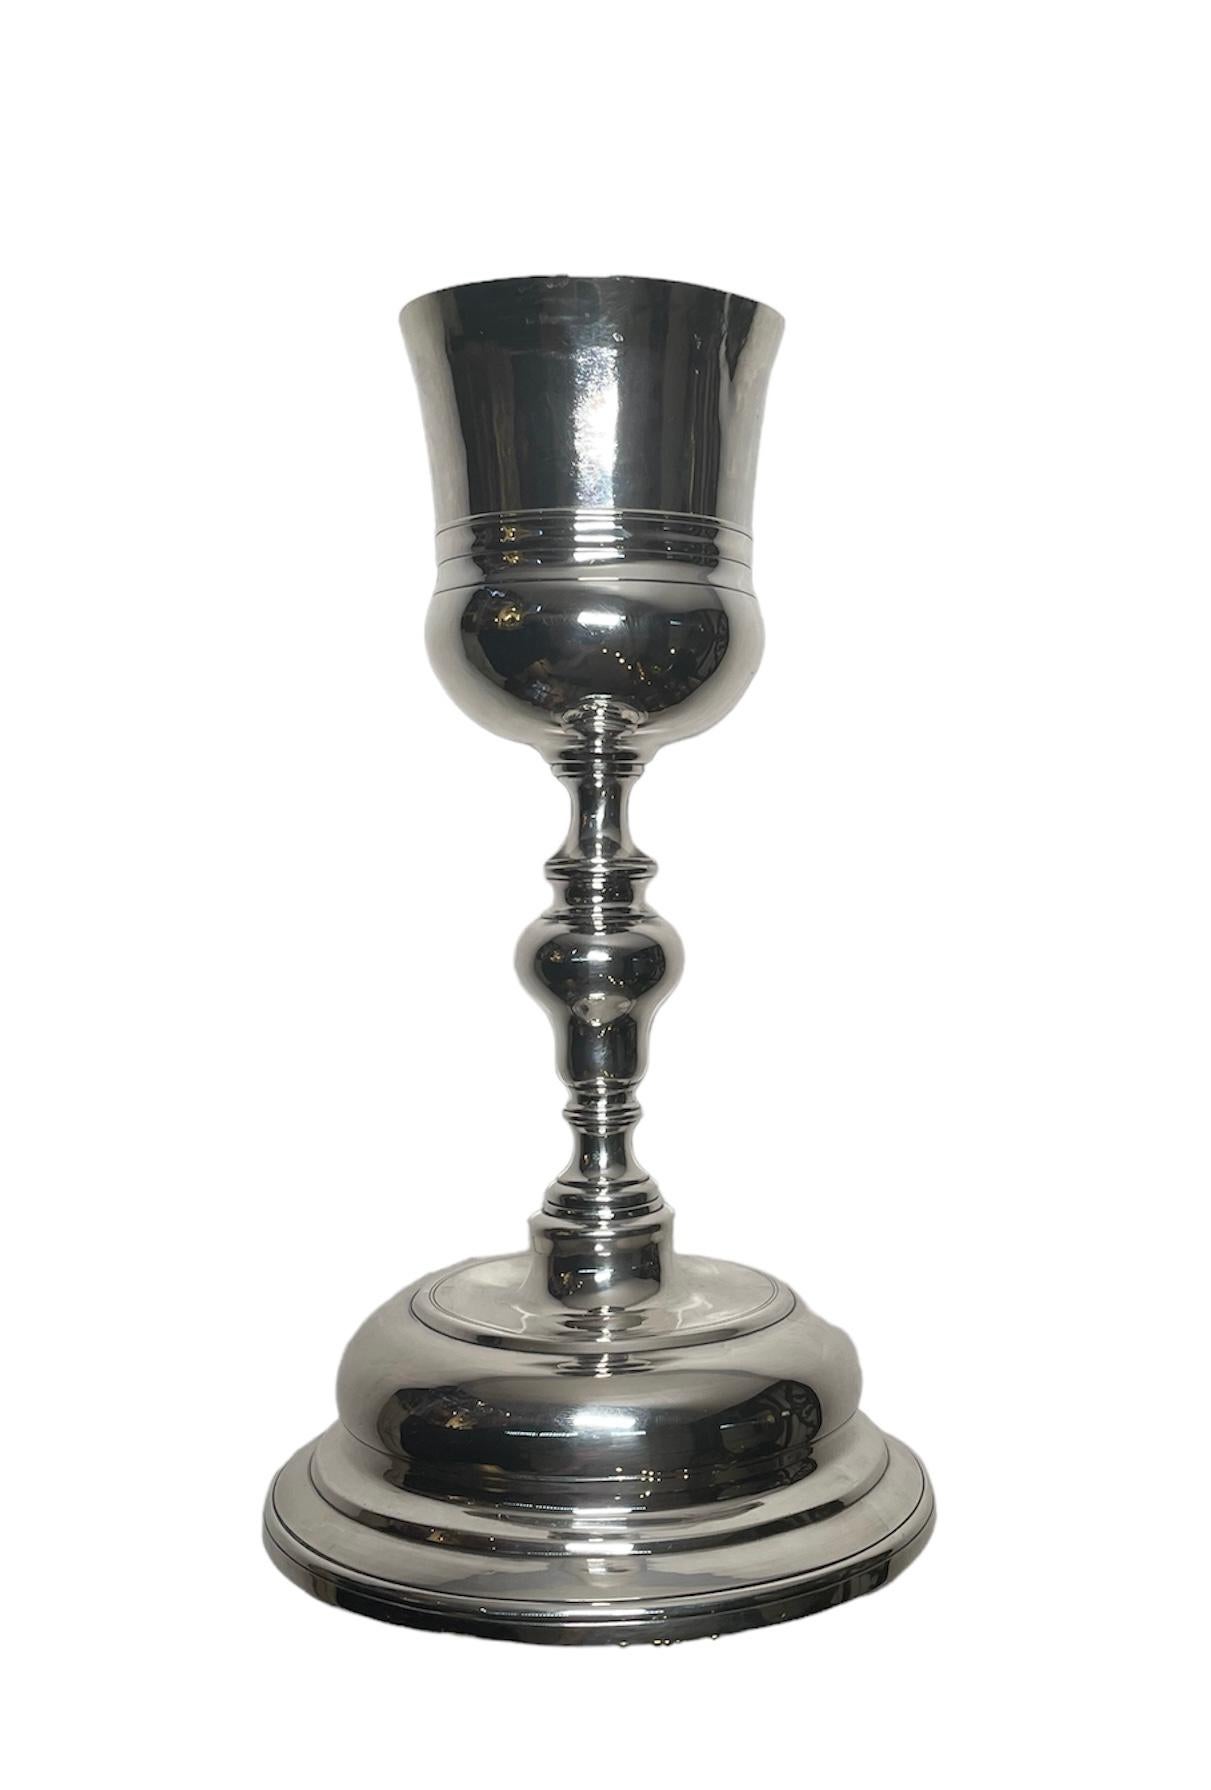 Dies ist ein spanischer Silberkelch aus dem 19. Jahrhundert. Sie zeigt einen glockenförmigen Becher, der von einem balusterartigen Stiel getragen wird und auf einem runden, dreistufigen Sockel steht. Am Rand des Sockels befindet sich die Punze